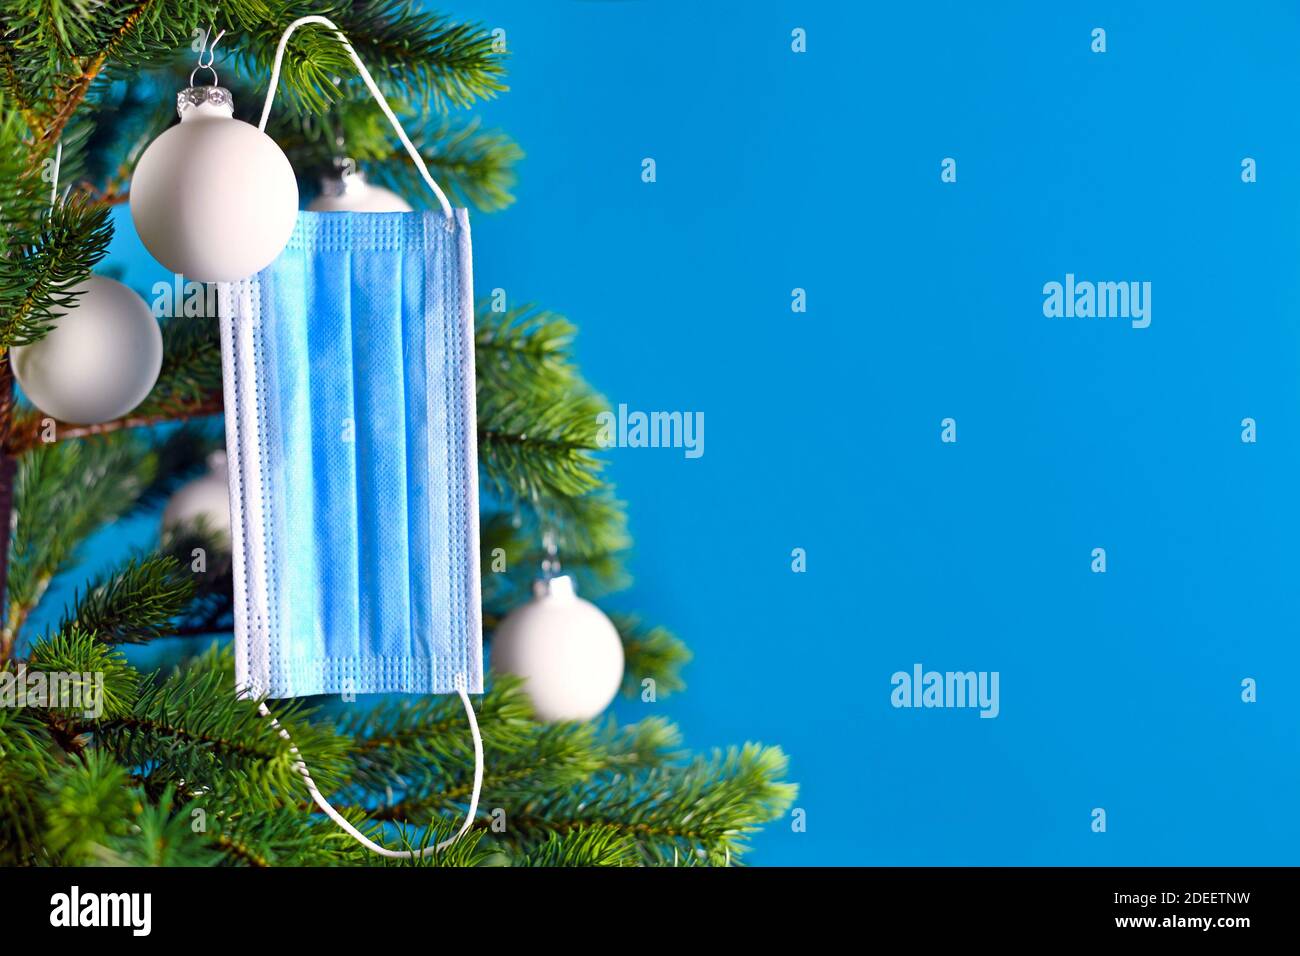 Medizinische Gesichtsmaske, die vom Weihnachtsbaum auf blauem Hintergrund mit leerem Kopierraum hängt. Konzept für Weihnachtsfeier in Zeiten des Corona Virus Stockfoto